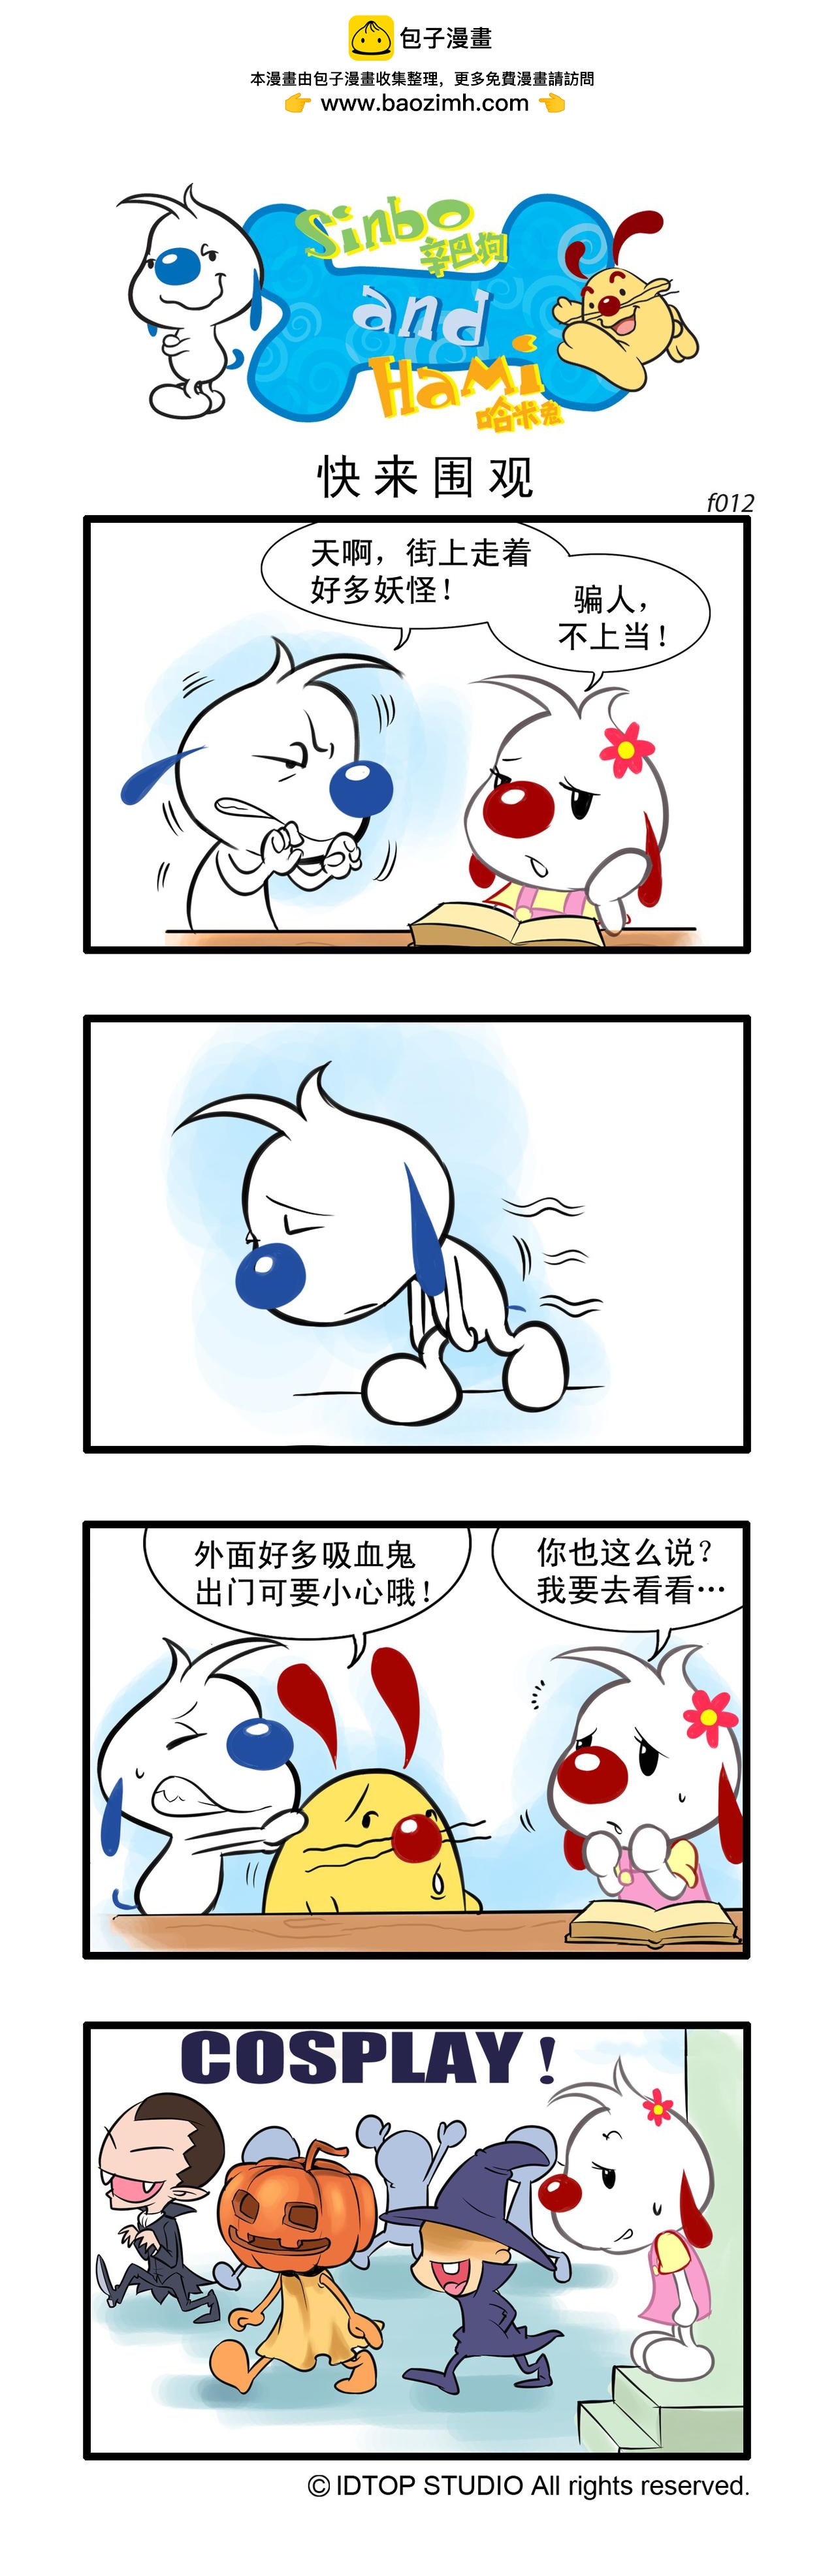 辛巴狗日常漫畫 - 多格4 - 1